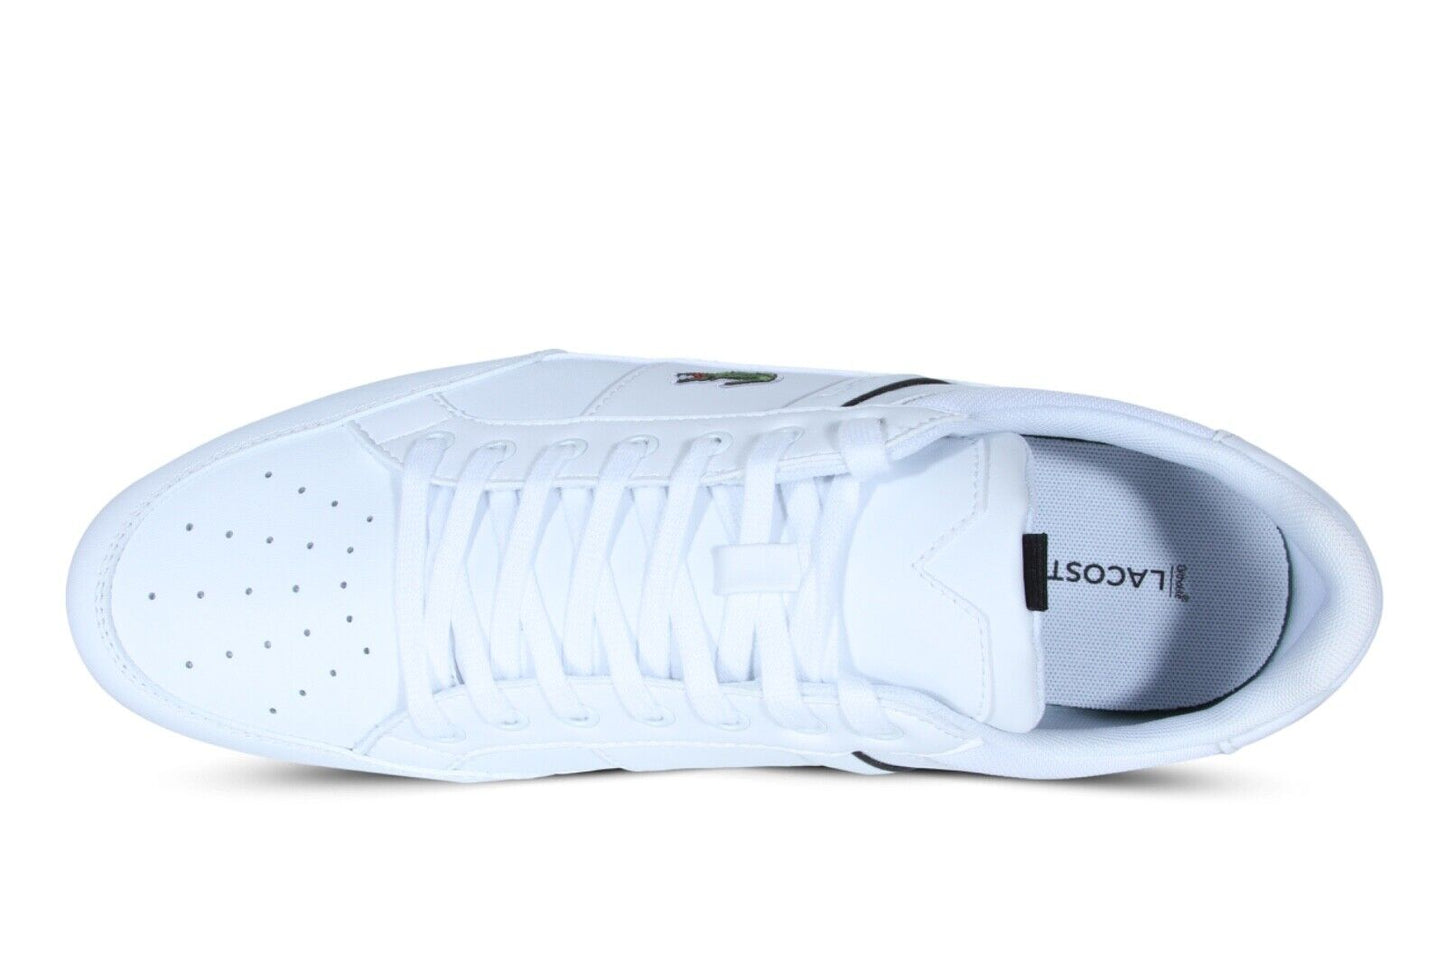 Lacoste Chaymon 0121 1 CMA Men’s Sneakers in White and Black 742CMA0014147